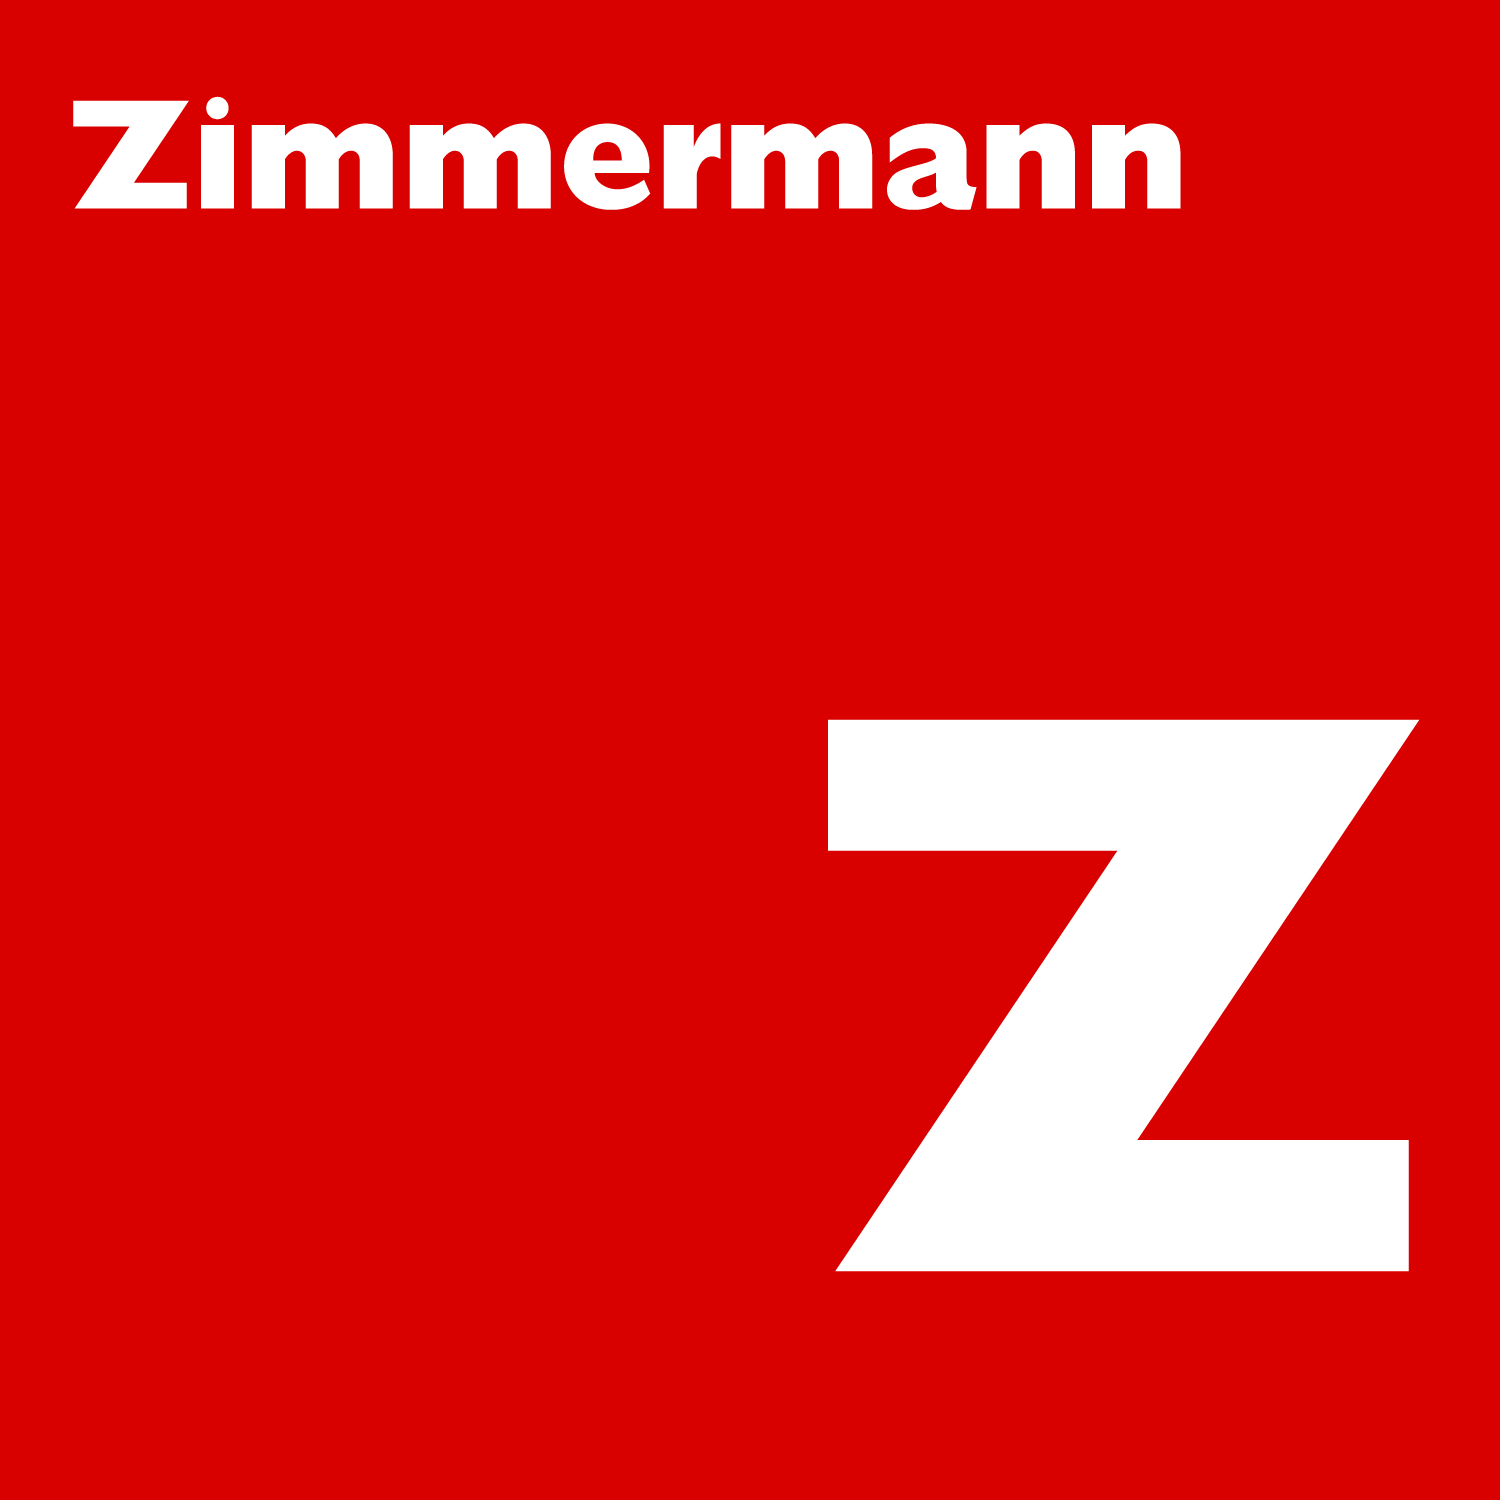 Zimmermann Strassen- + Tiefbau AG